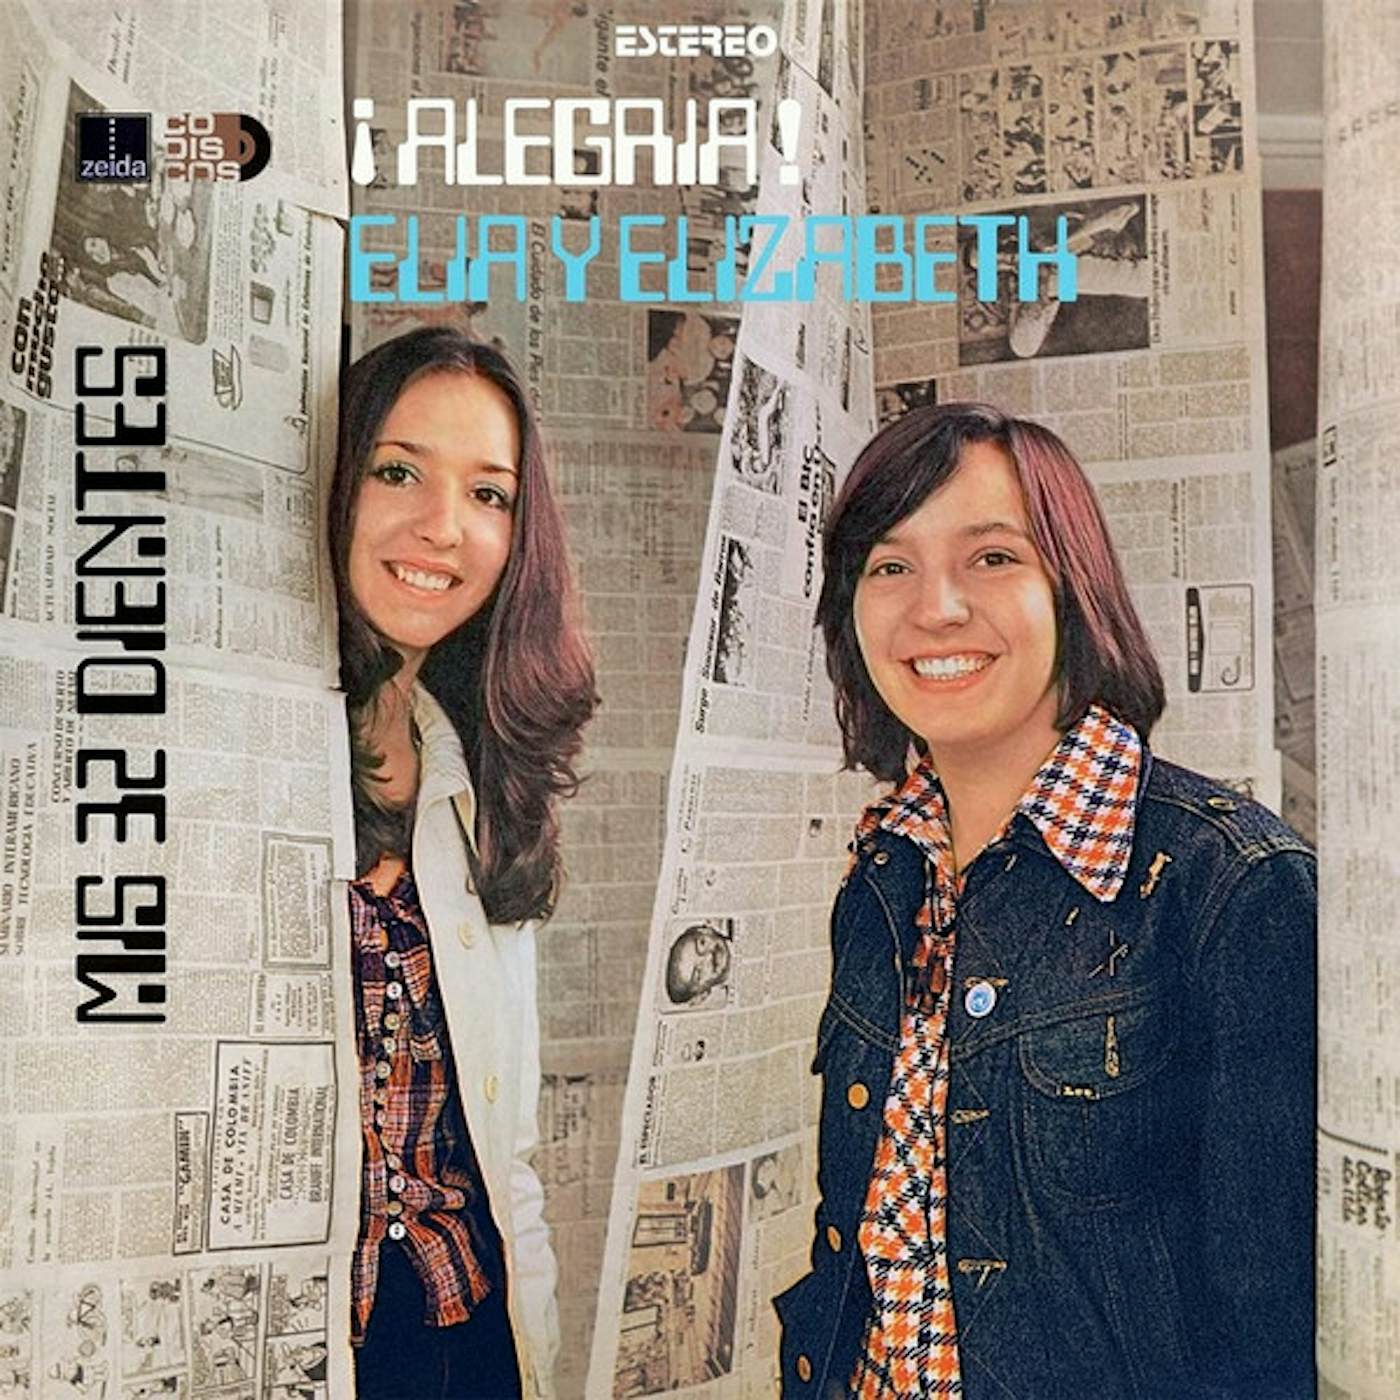 Elia y Elizabeth ALEGRIA! Vinyl Record